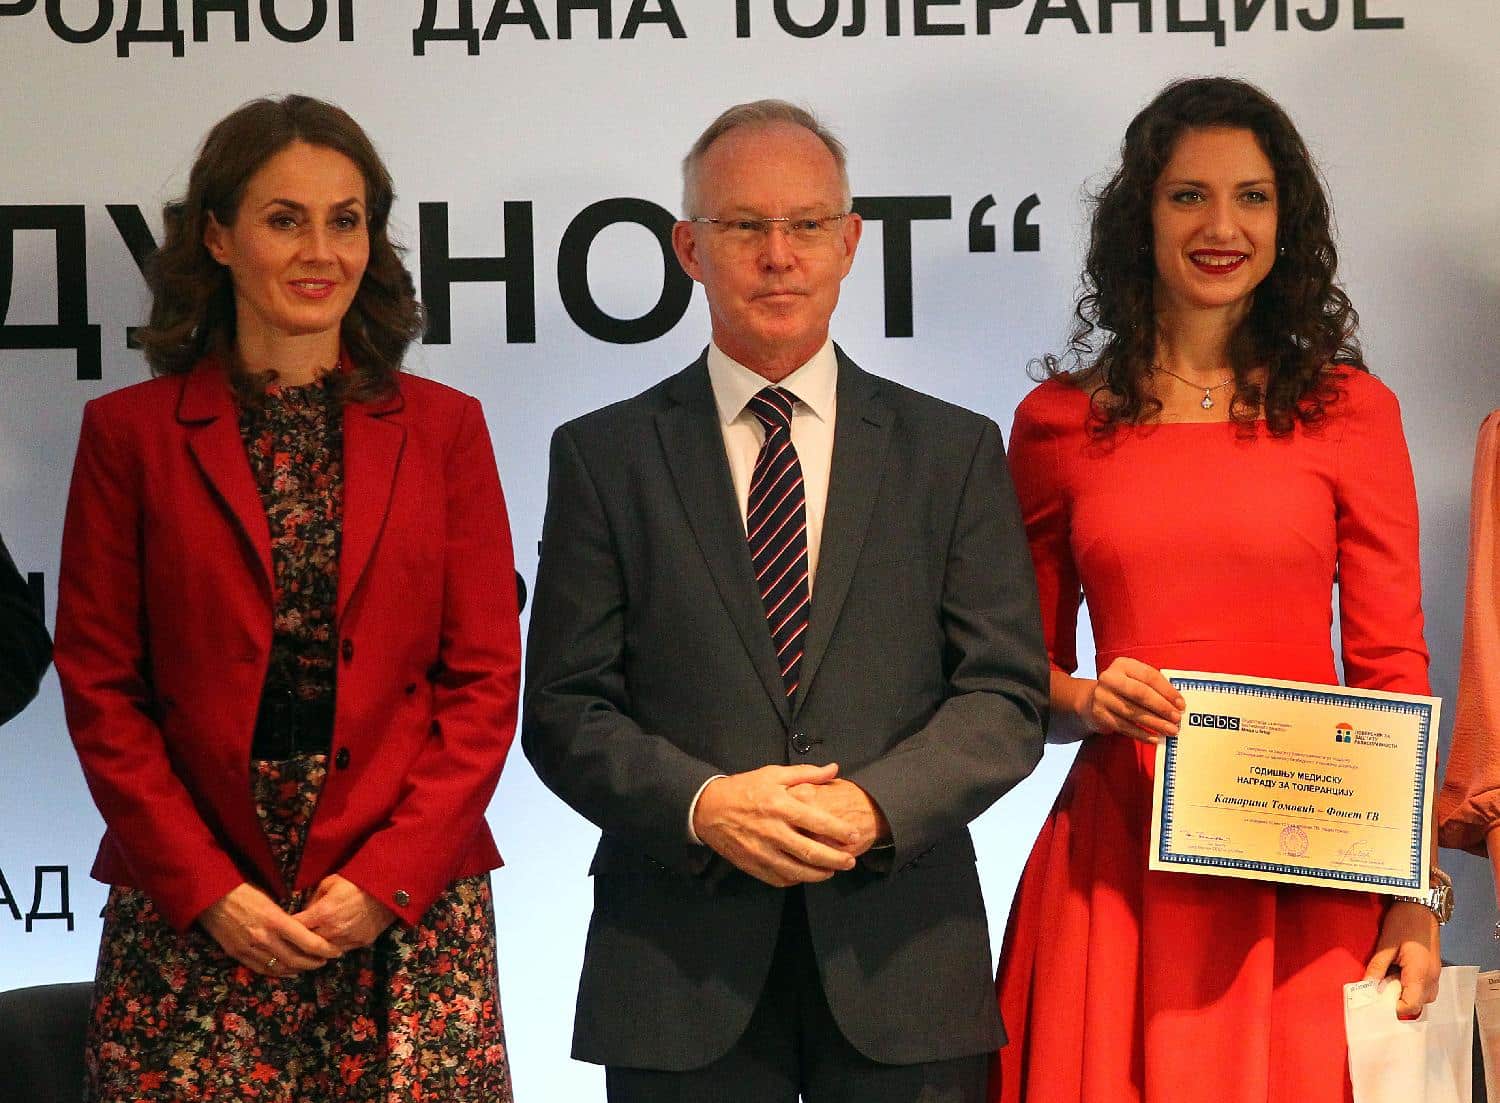 Poverenica dodelila nagrade za najbolje medijske sadržaje na temu borbe protiv diskriminacije 2